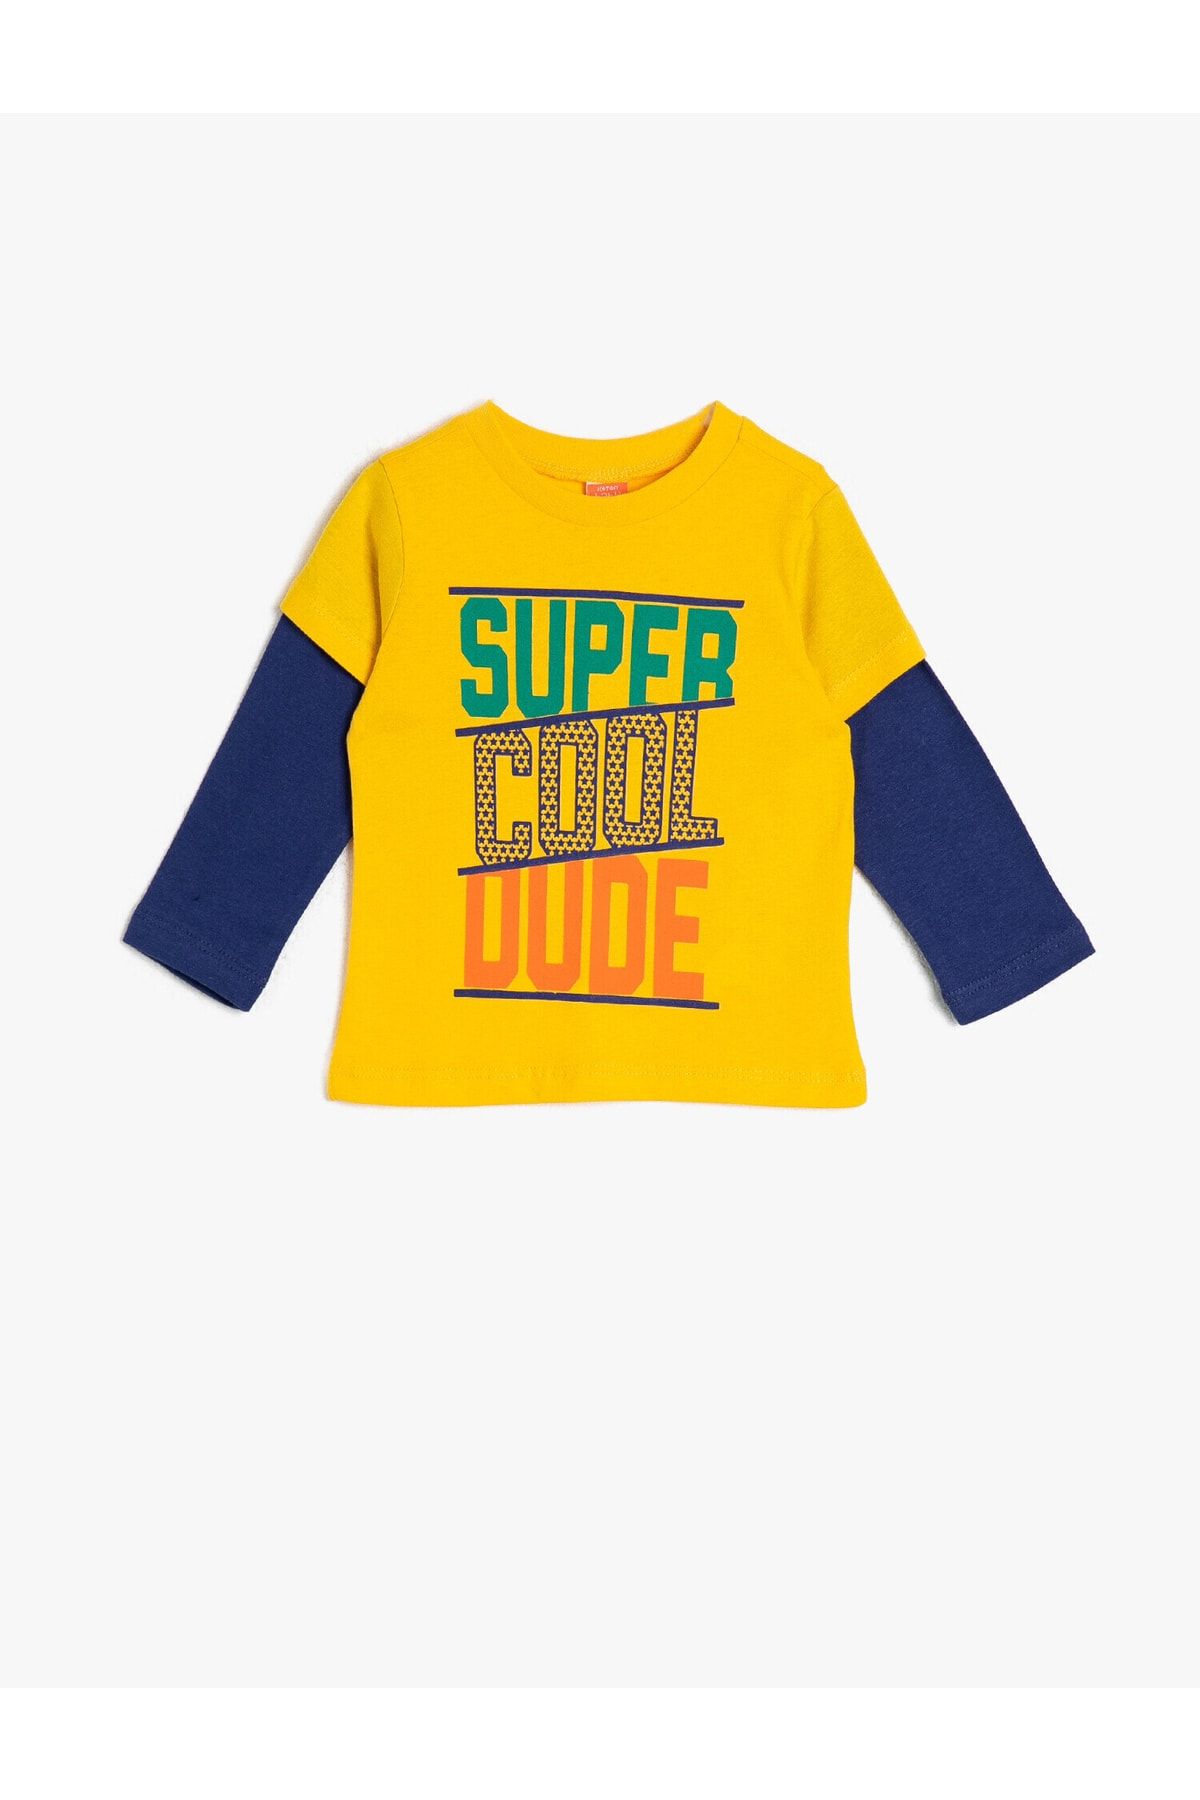 Koton Sarı Erkek Çocuk Yazili Baskili T-Shirt